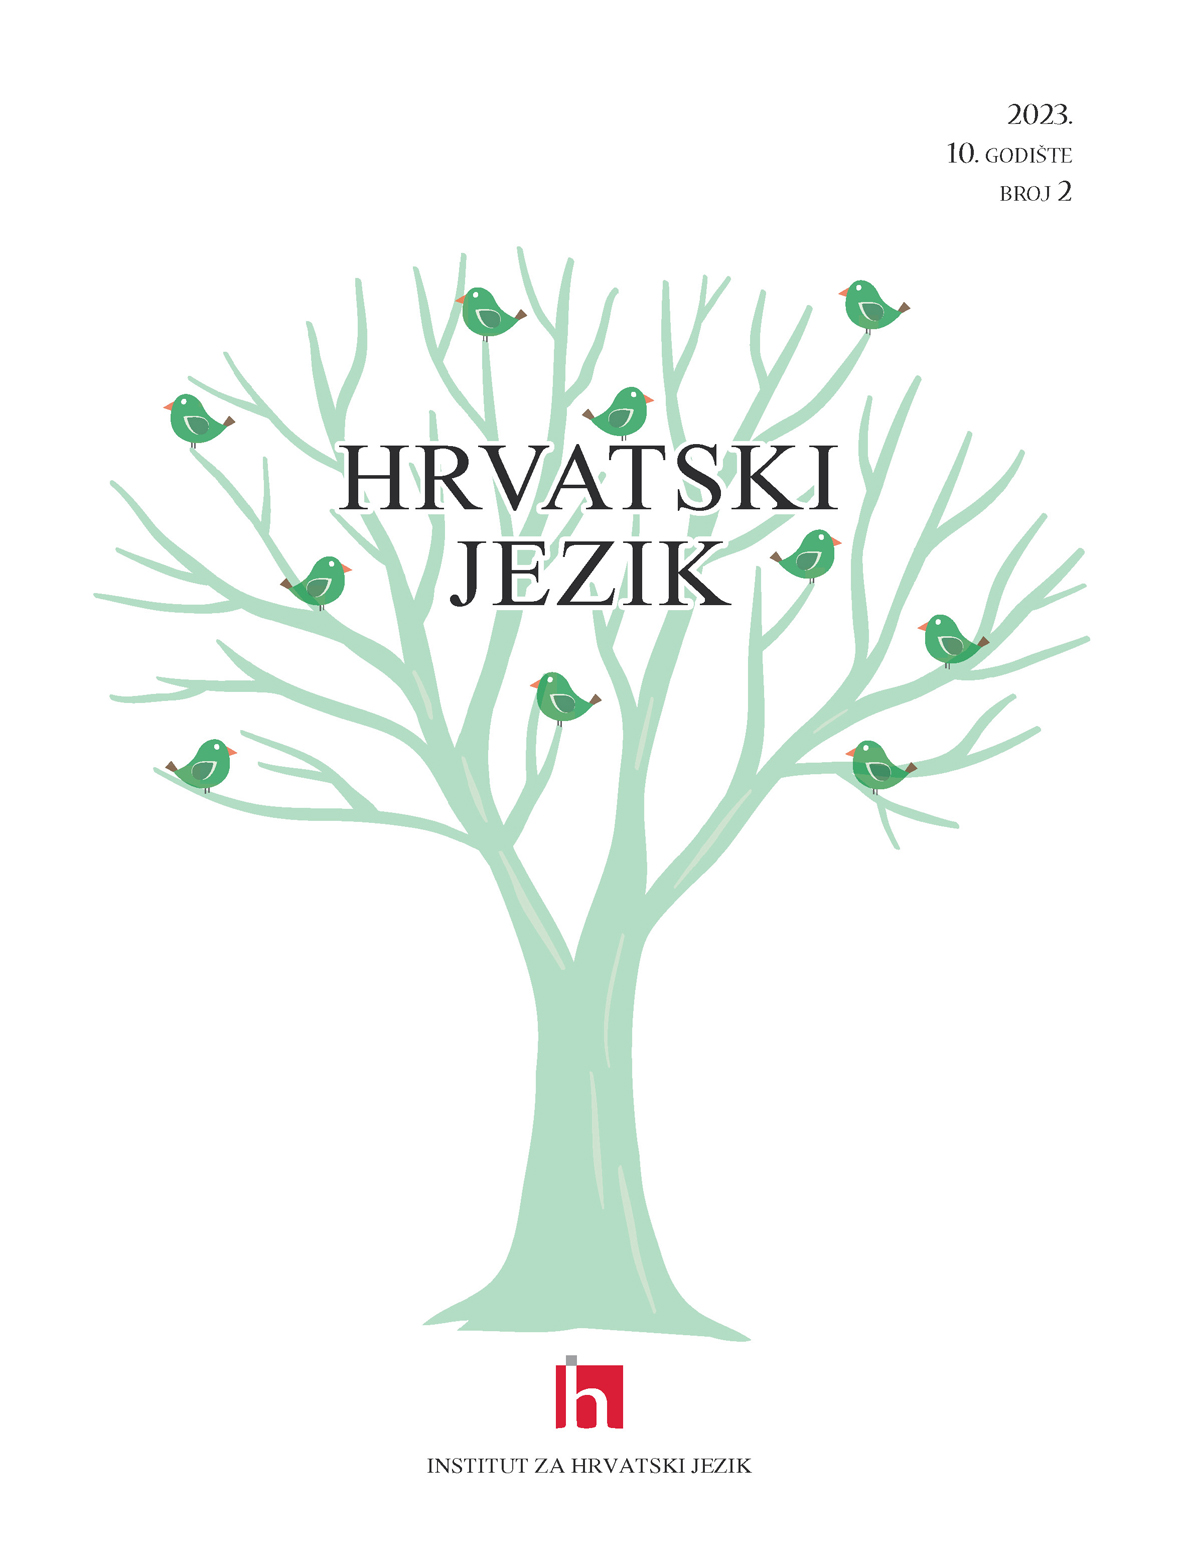 logo Hrvatski jezik : znanstveno-popularni časopis za kulturu hrvatskoga jezika